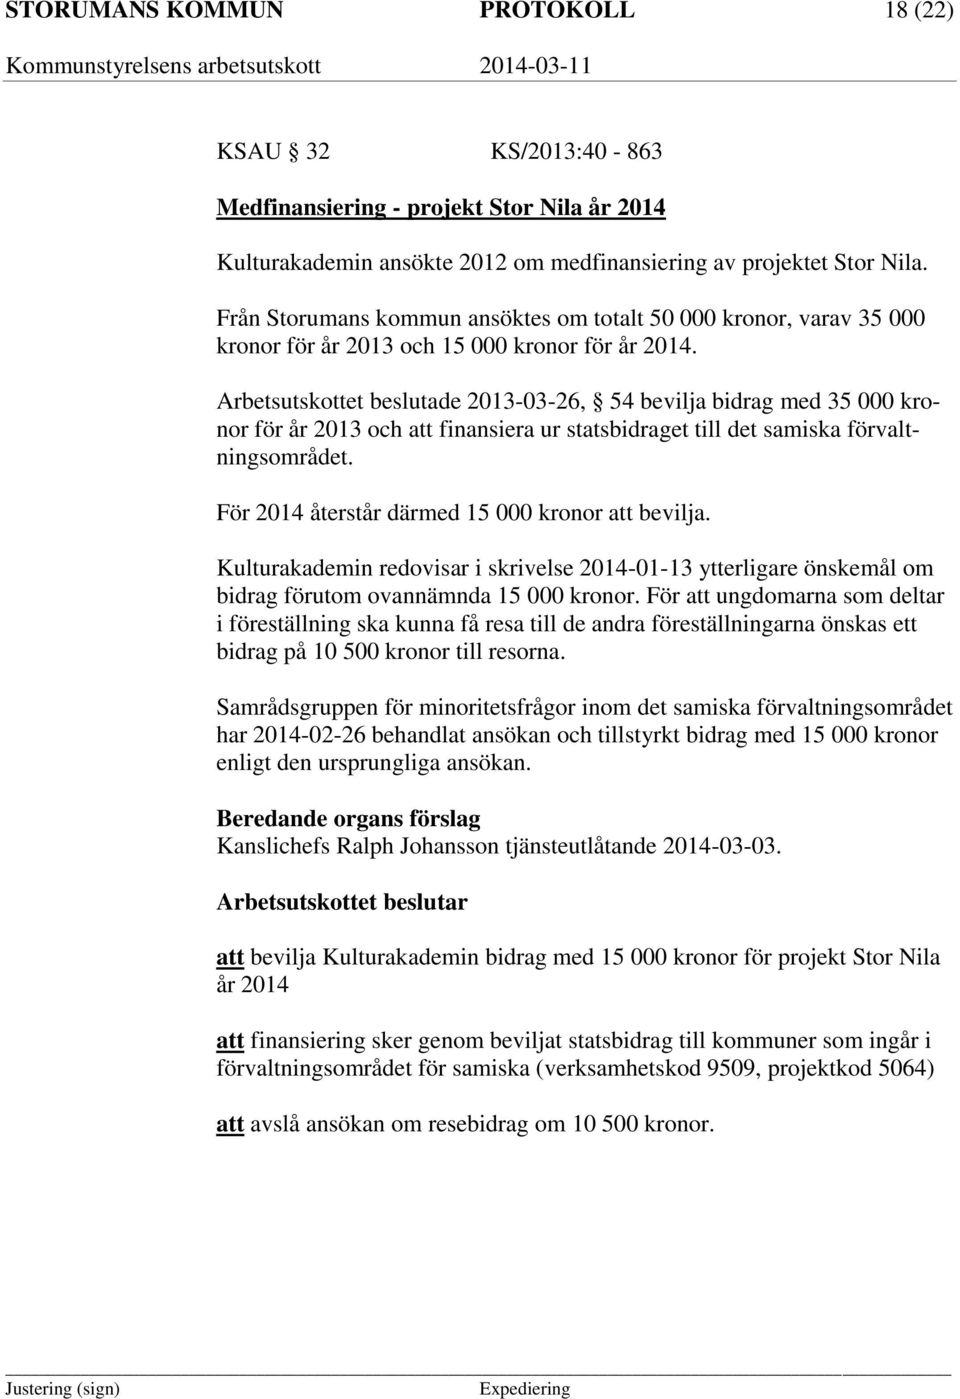 Arbetsutskottet beslutade 2013-03-26, 54 bevilja bidrag med 35 000 kronor för år 2013 och att finansiera ur statsbidraget till det samiska förvaltningsområdet.